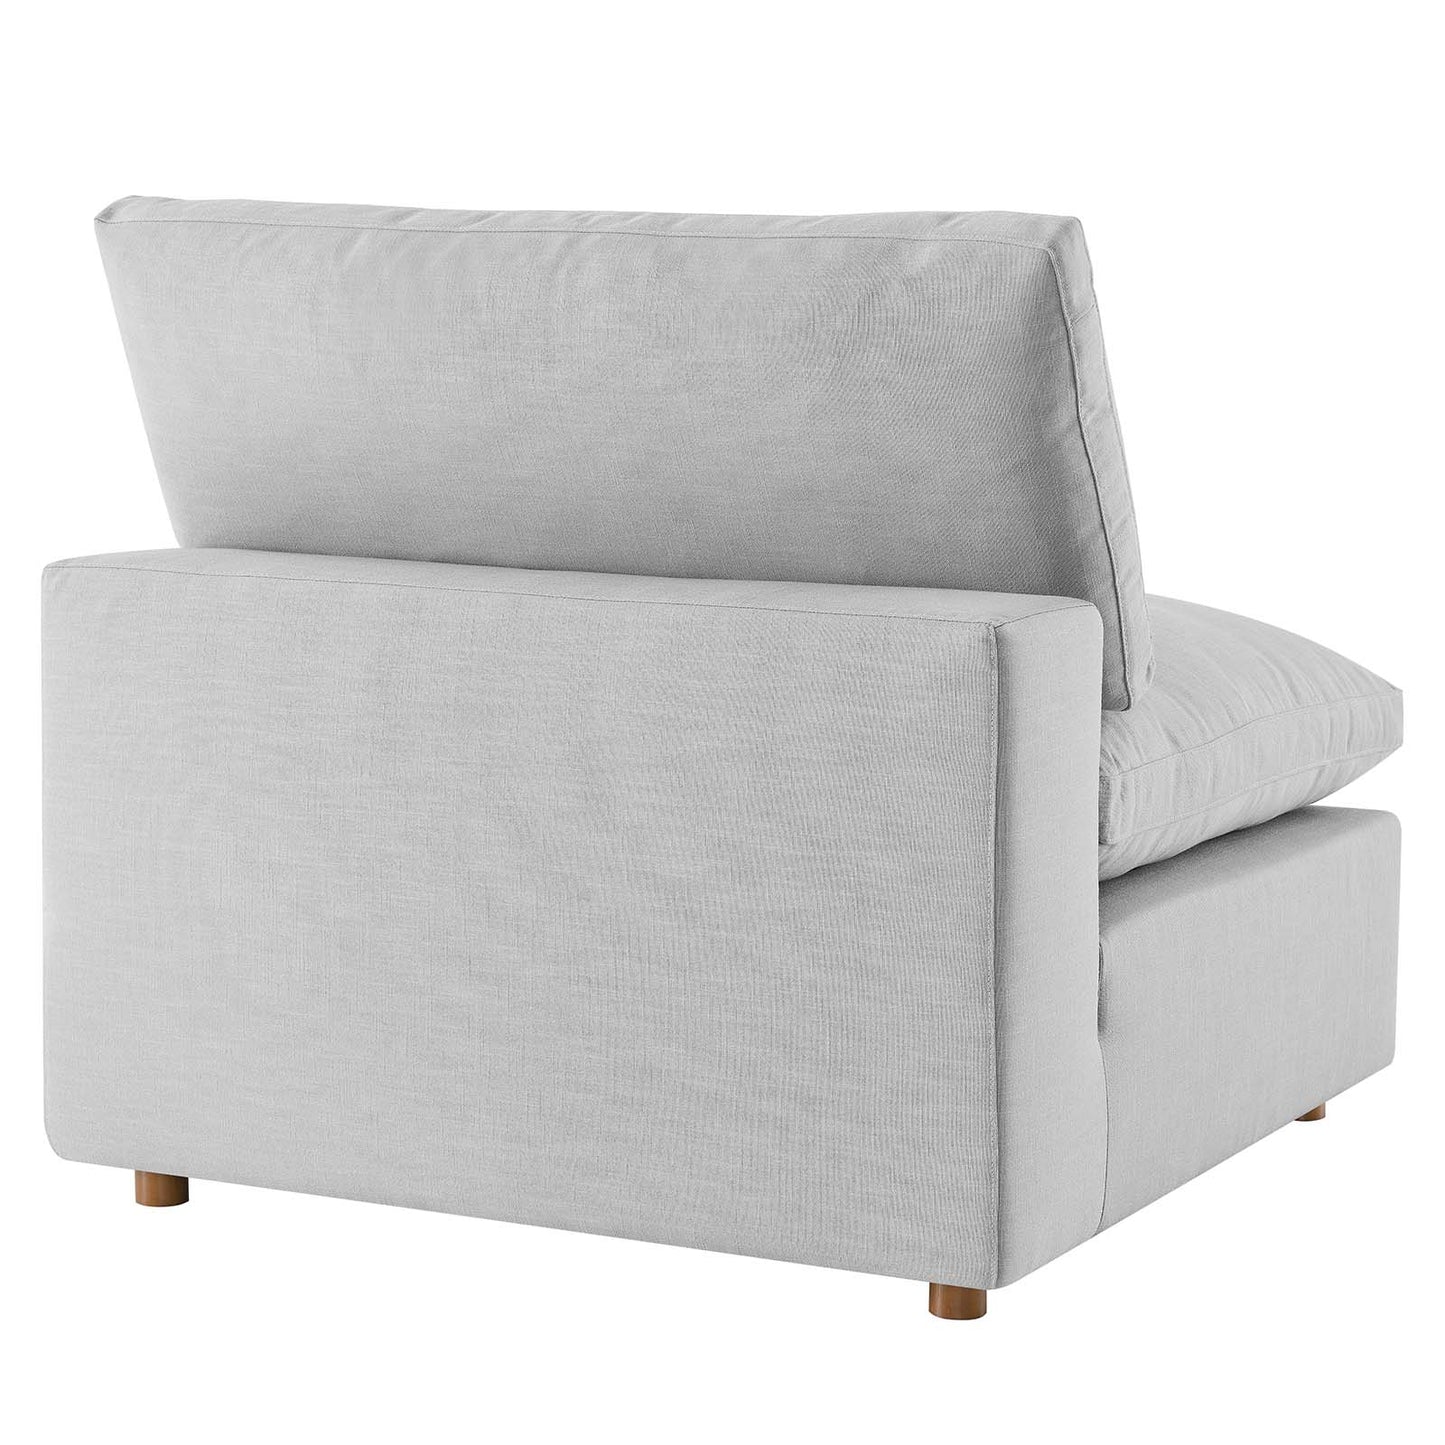 Commix Down Filled Overstuffed 3 Piece Sectional Sofa Set Light Gray EEI-3355-LGR